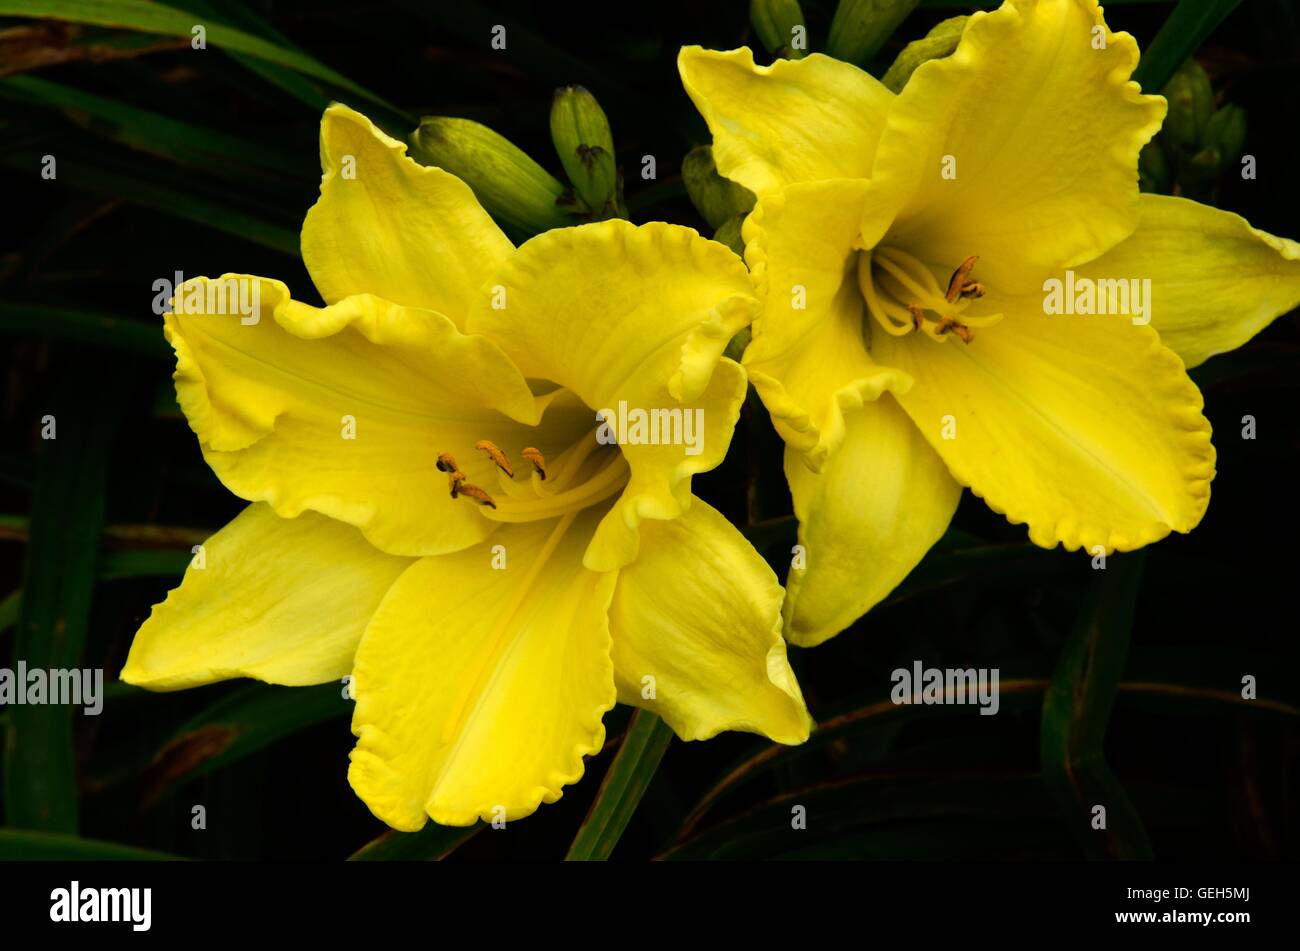 Hemerocallis Golden Ginko Day Lily daylily Stock Photo